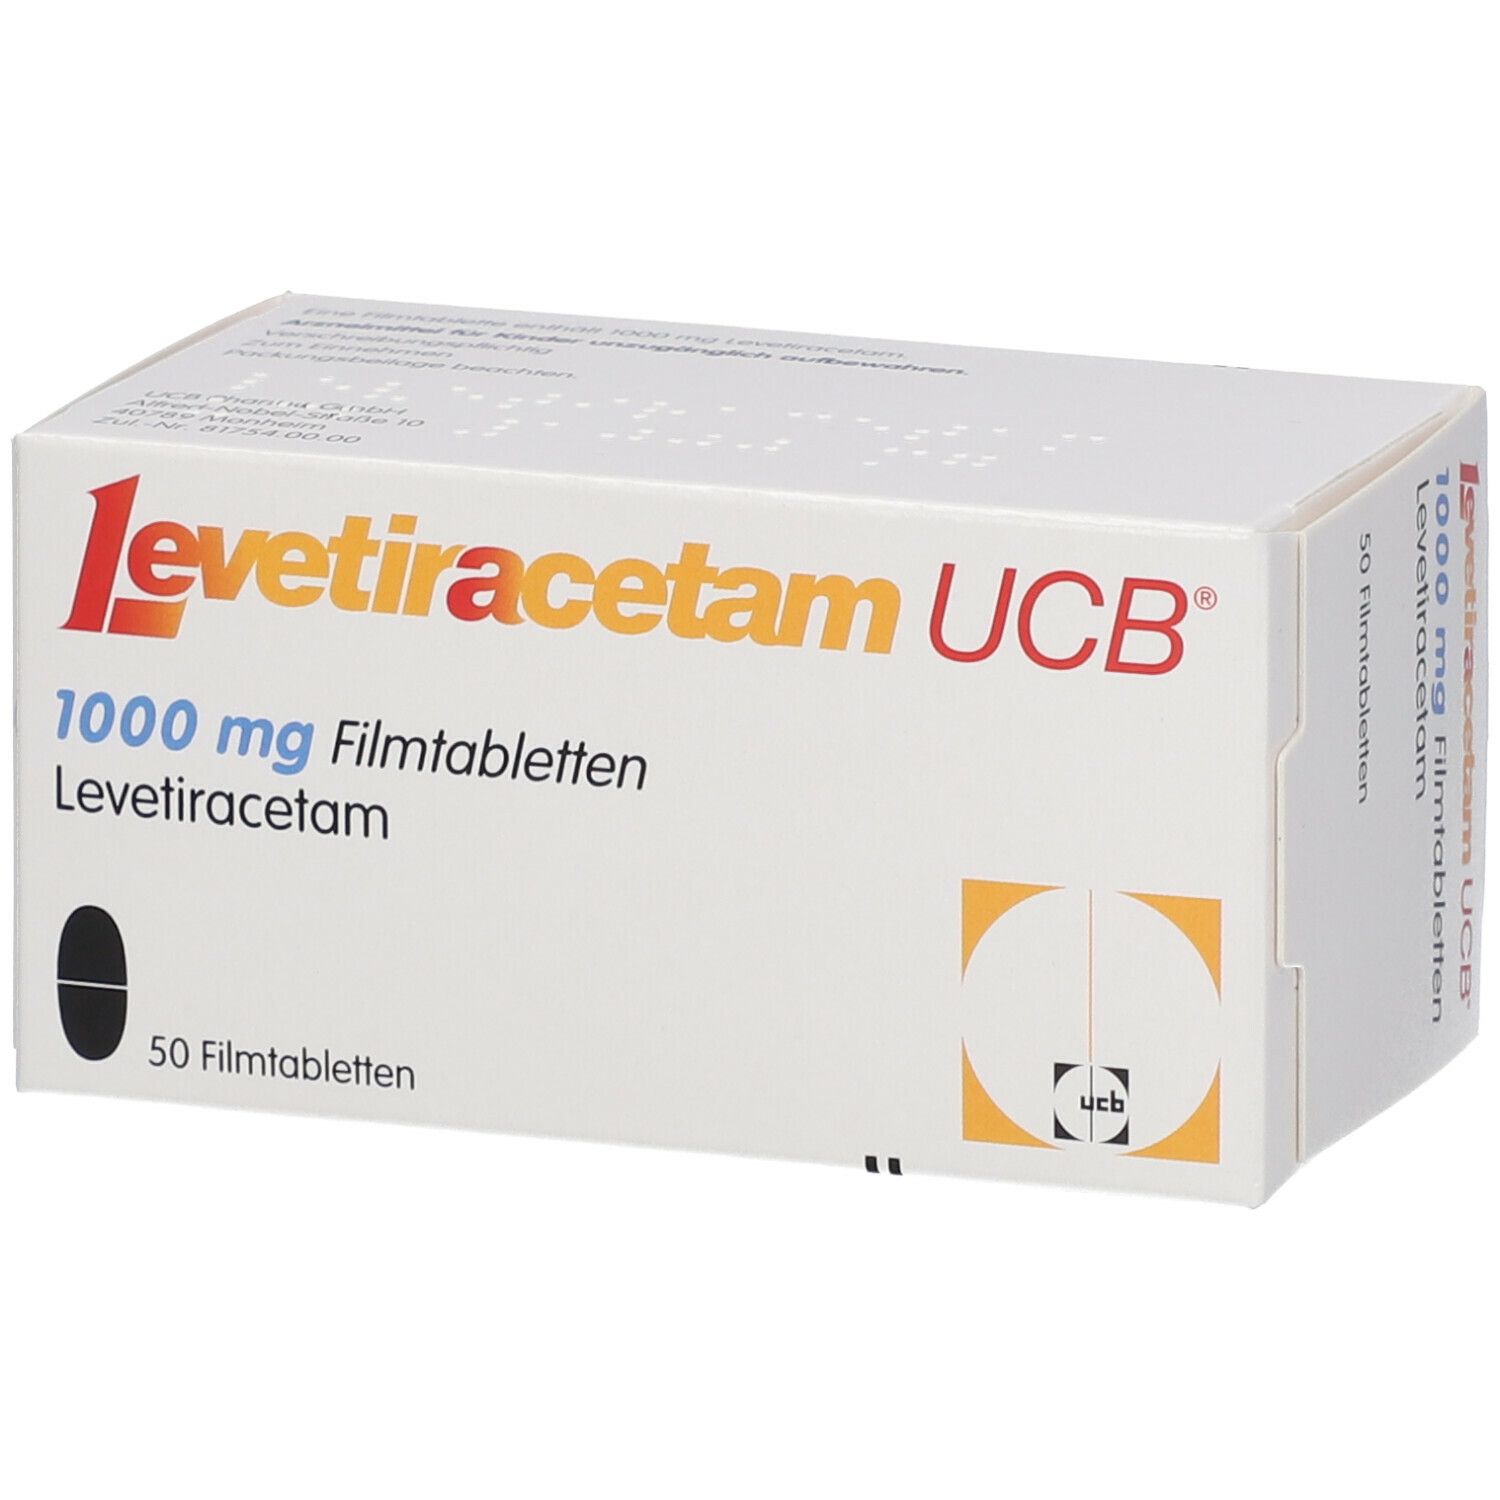 Levetiracetam UCB® 1000 mg